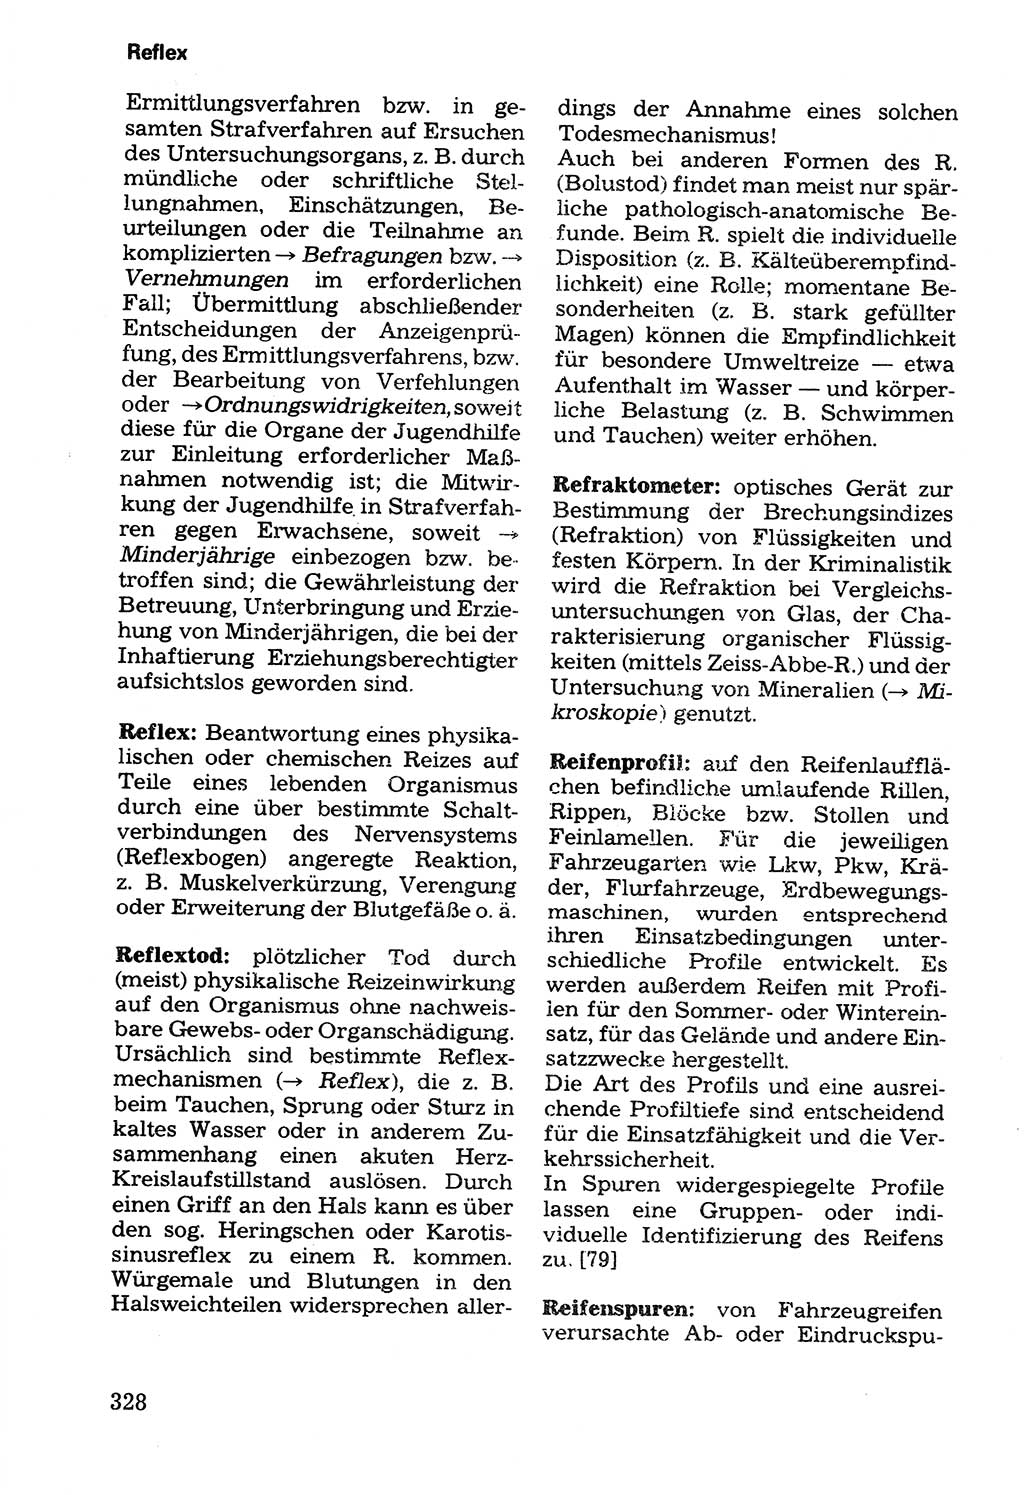 Wörterbuch der sozialistischen Kriminalistik [Deutsche Demokratische Republik (DDR)] 1981, Seite 328 (Wb. soz. Krim. DDR 1981, S. 328)